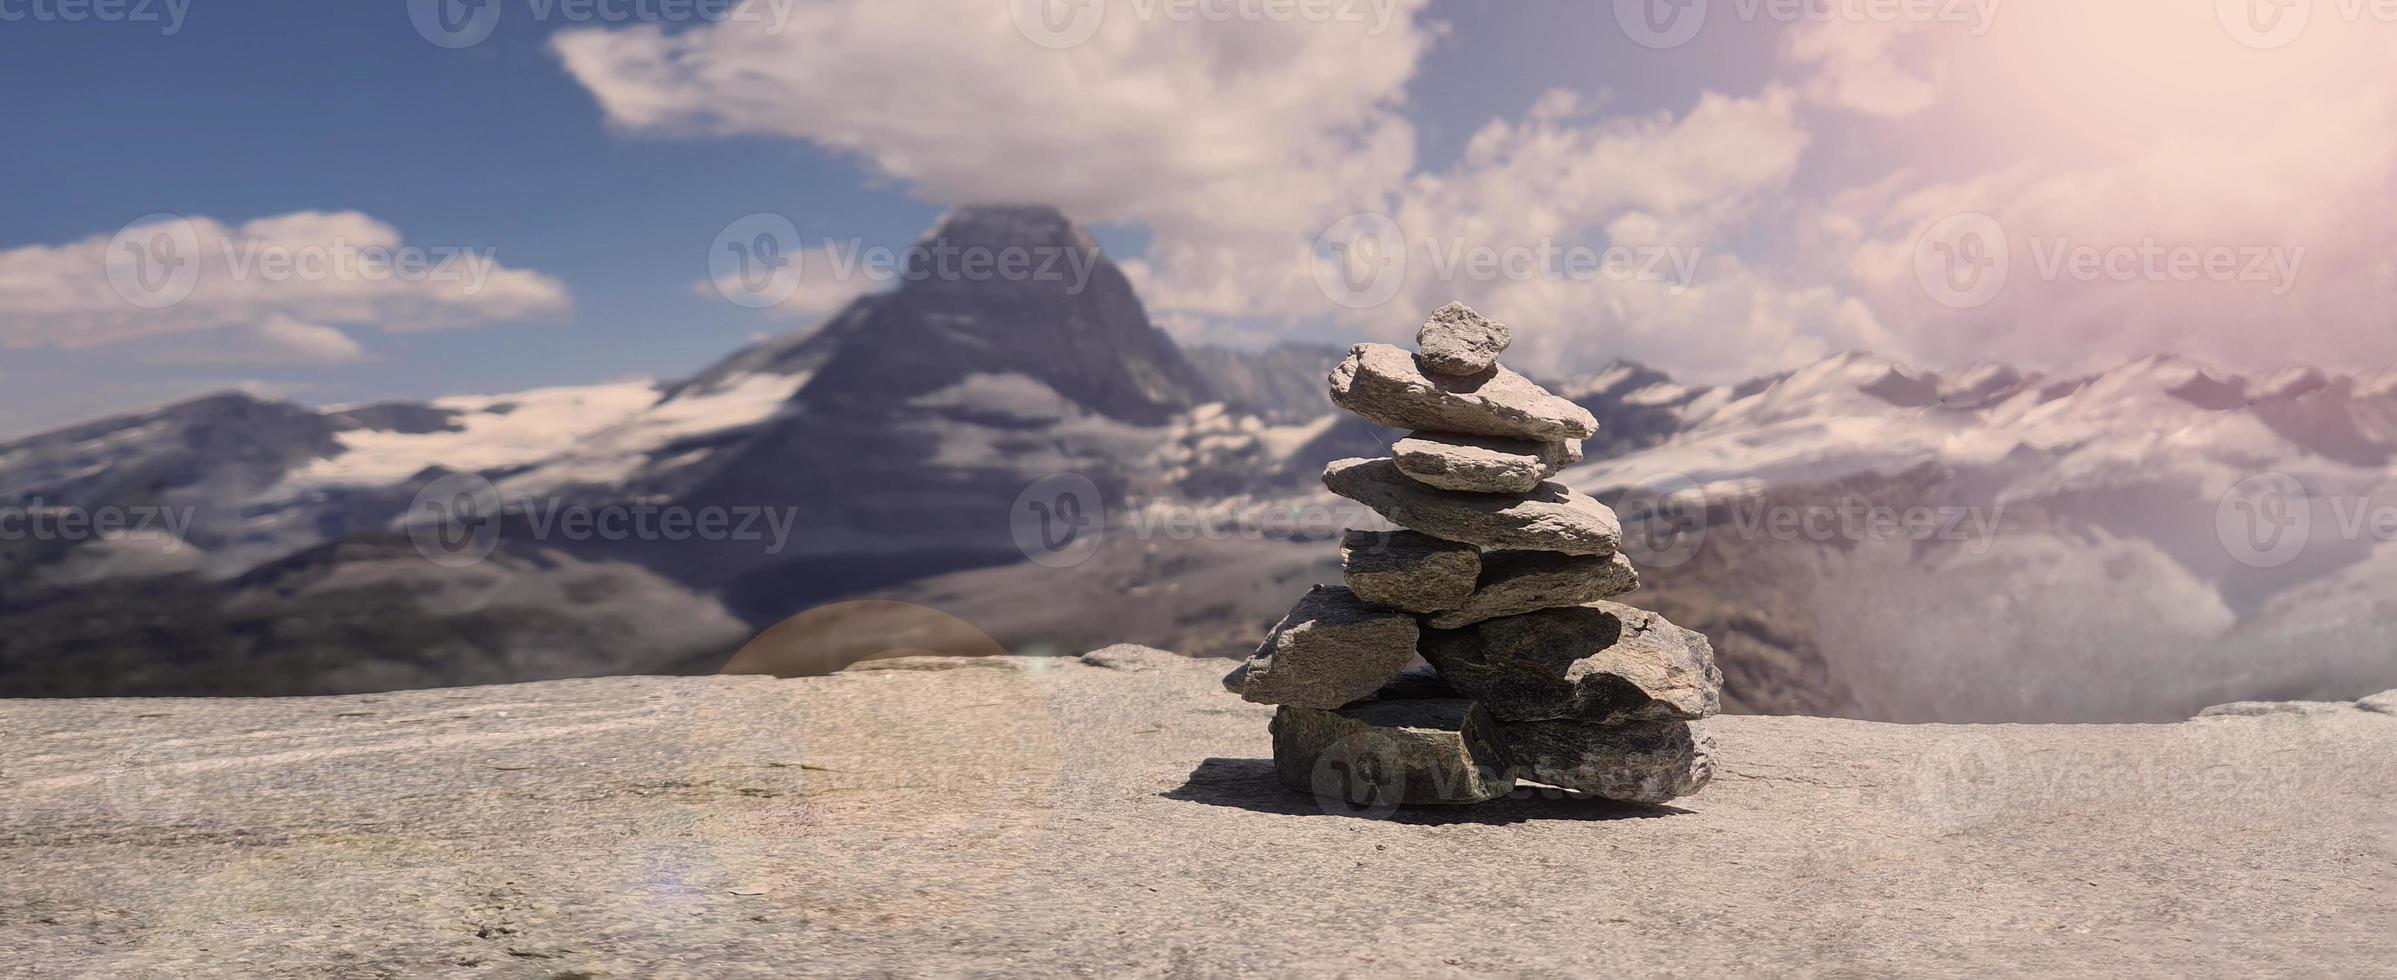 pila di pietre in cima alla montagna organizzata per la meditazione. foto